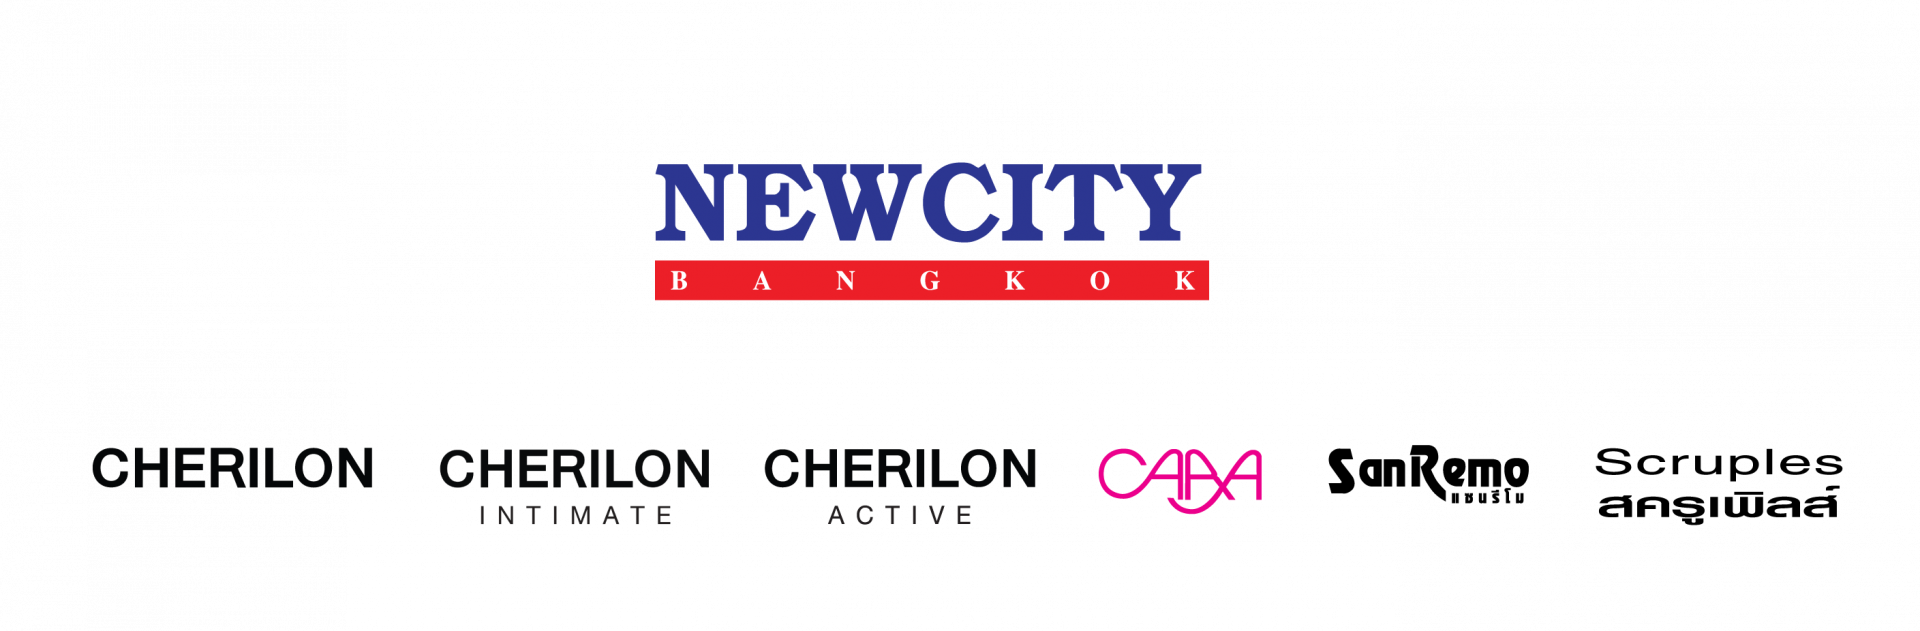 บมจ.นิวซิตี้ (กรุงเทพฯ) บริษัท นิวซิตี้ (กรุงเทพฯ) จำกัด (มหาชน) Newcity (Bangkok) Public Company Limited Newcity (Bangkok) Pub Co Ltd.